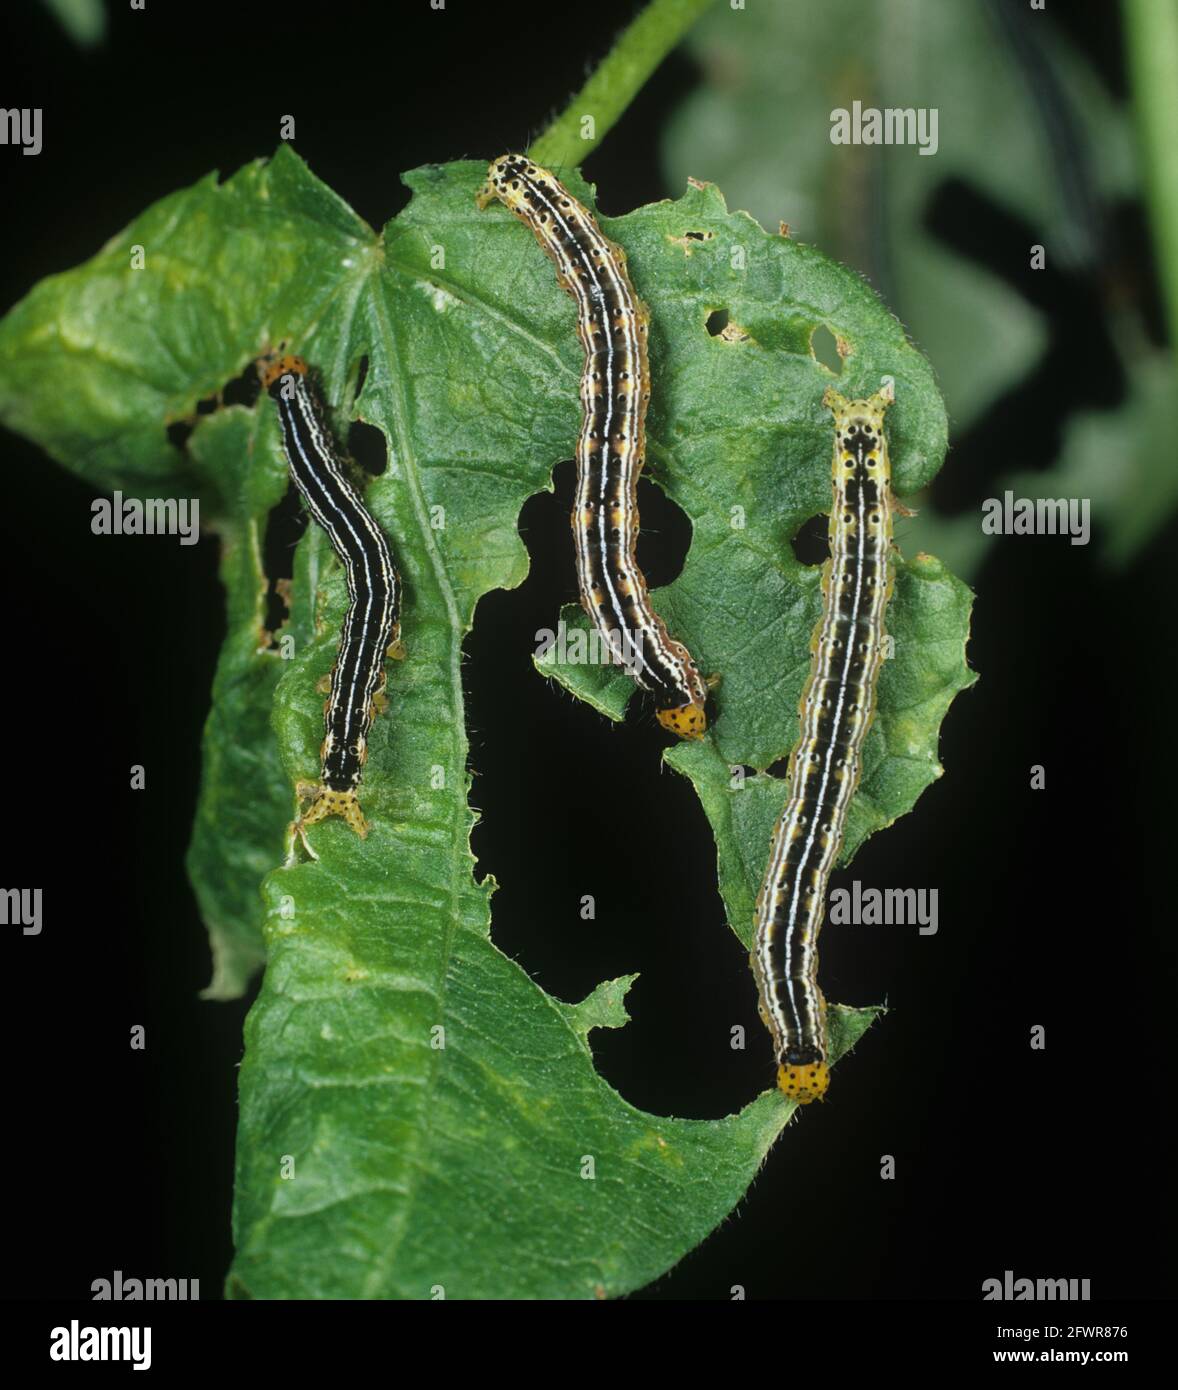 Cotton leafworm (Alabama argillacea) caterpillar pests on a damaged cotton leaf Stock Photo